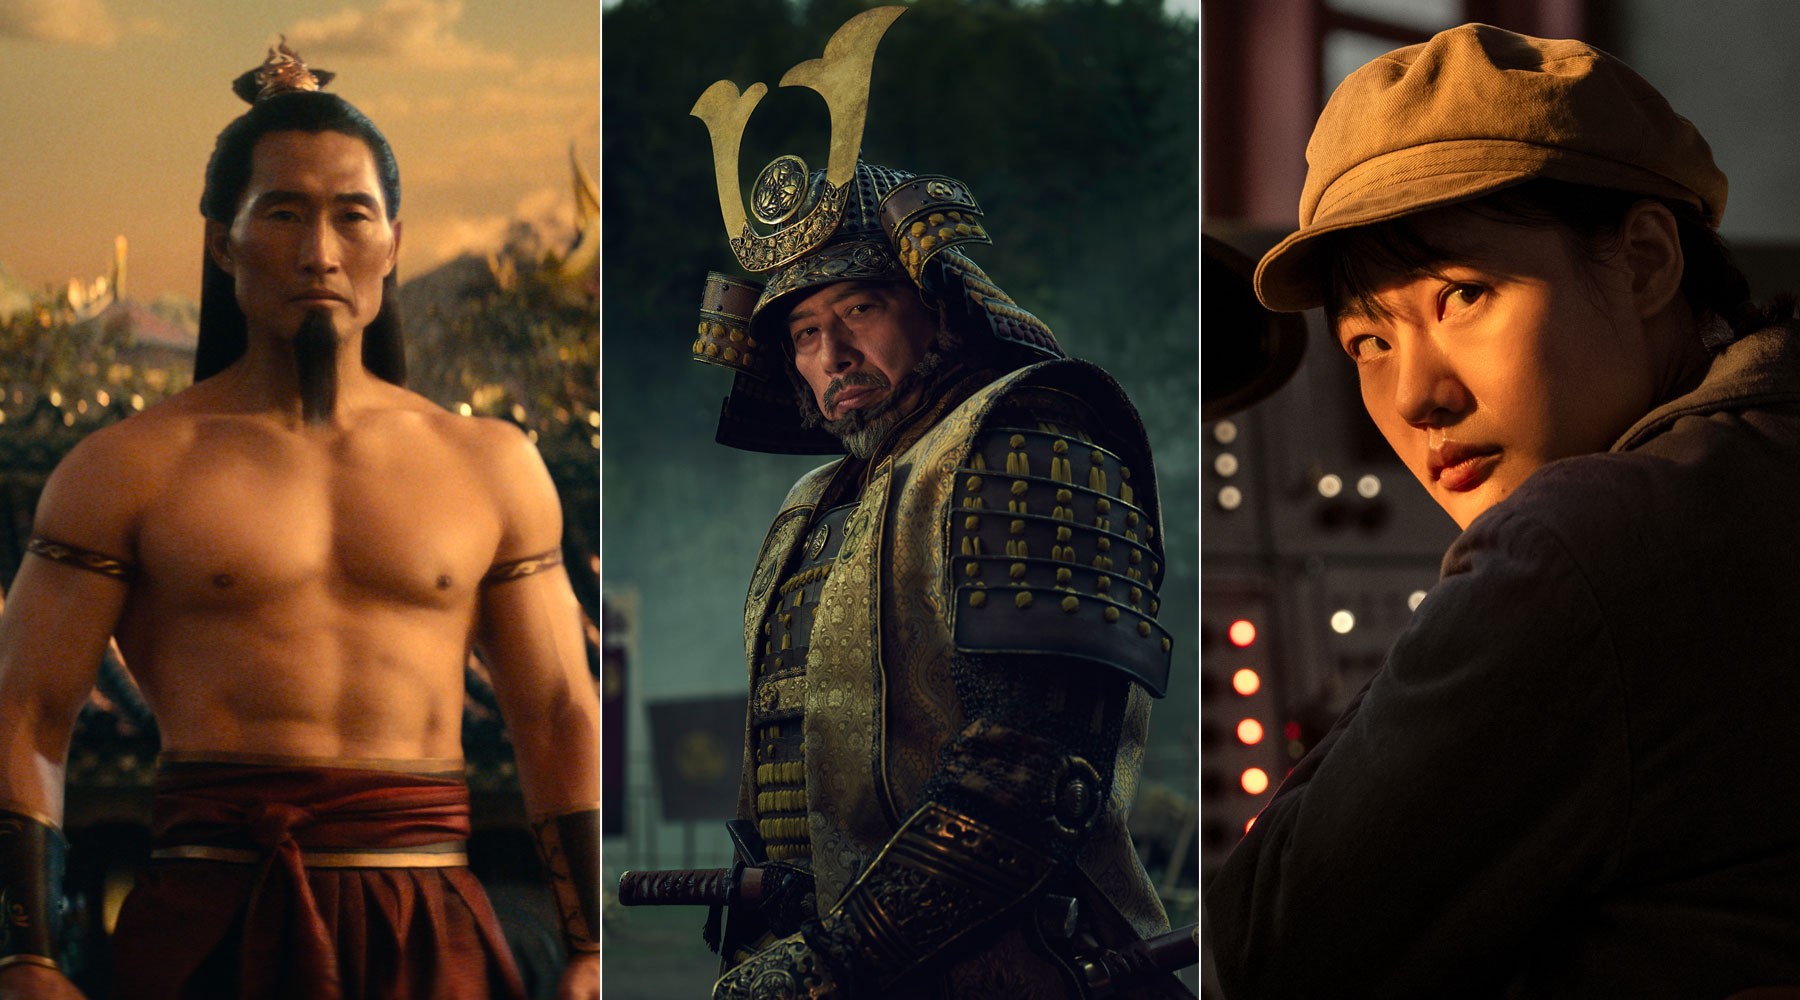 Representatividade asiática em Hollywood vive era de ouro com 'Avatar', 'Xógum' e 'O problema dos 3 corpos'